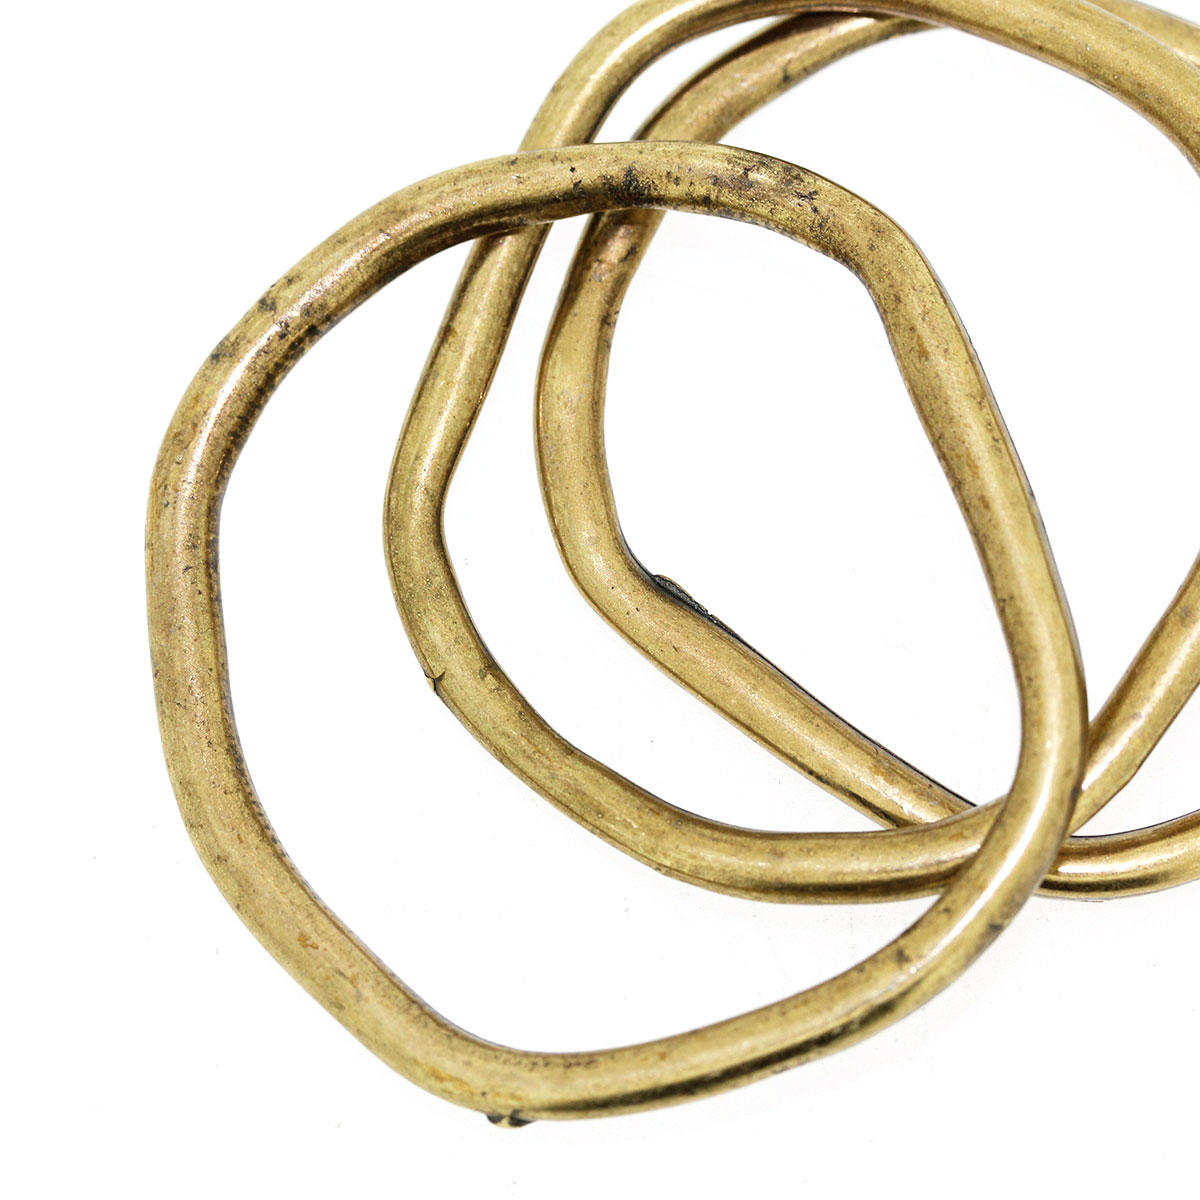 Antique Gold Large Irregular Ring Bead